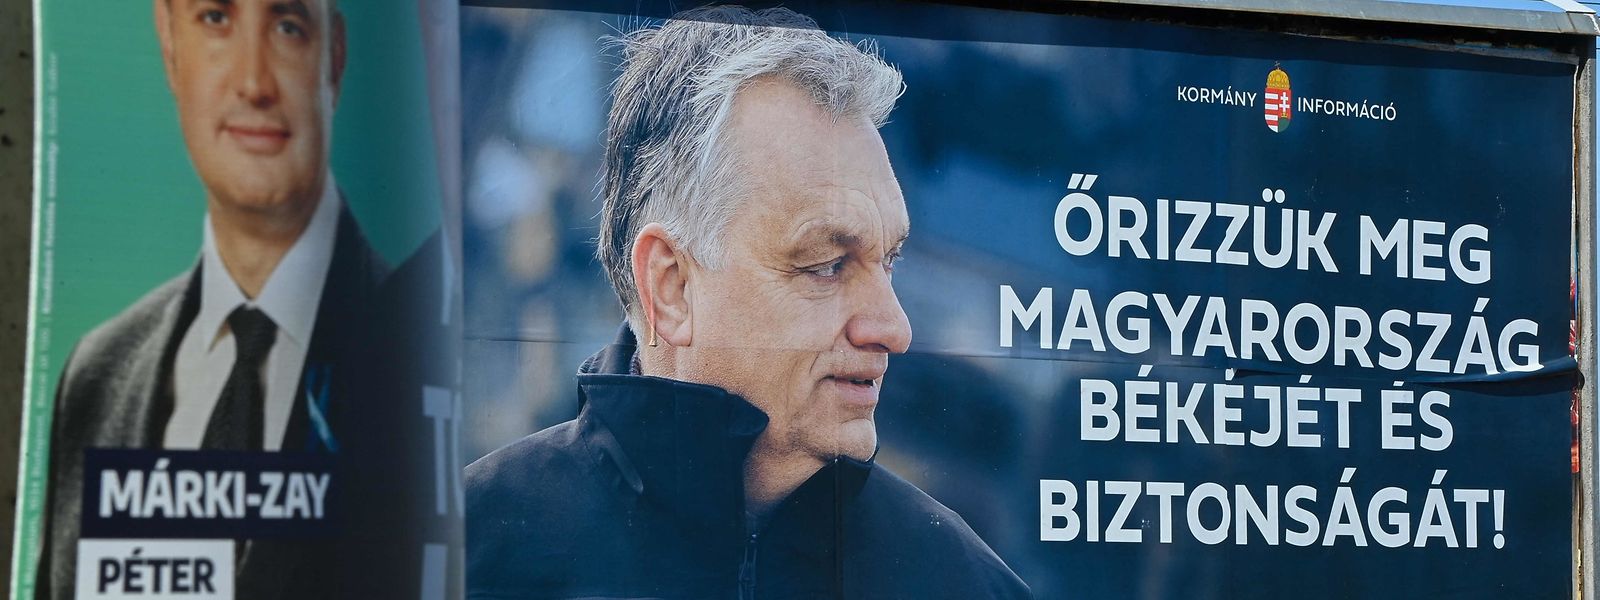 Wahlplakate mit dem oppositionellen Kandidaten Péter Marki-Zay (l.) und Fidesz-Chef und Premier Viktor Orbán.